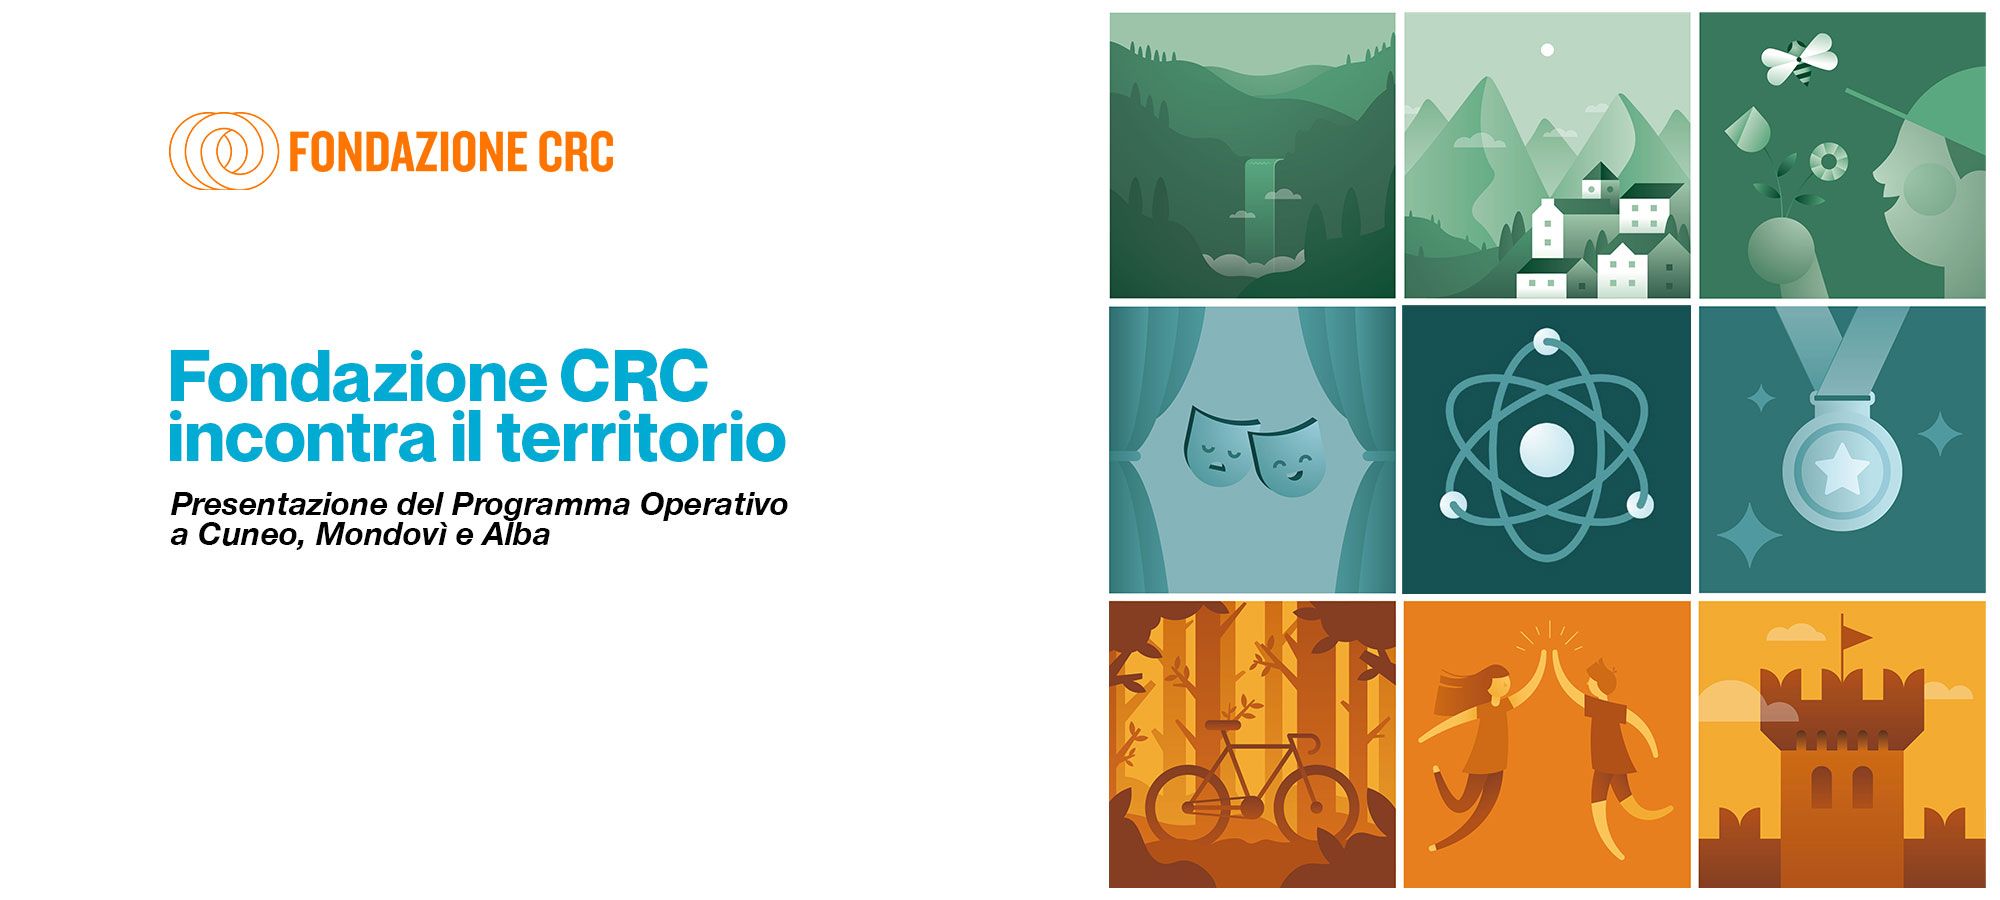 Fondazione CRC incontra il territorio: presentazione del Programma Operativo